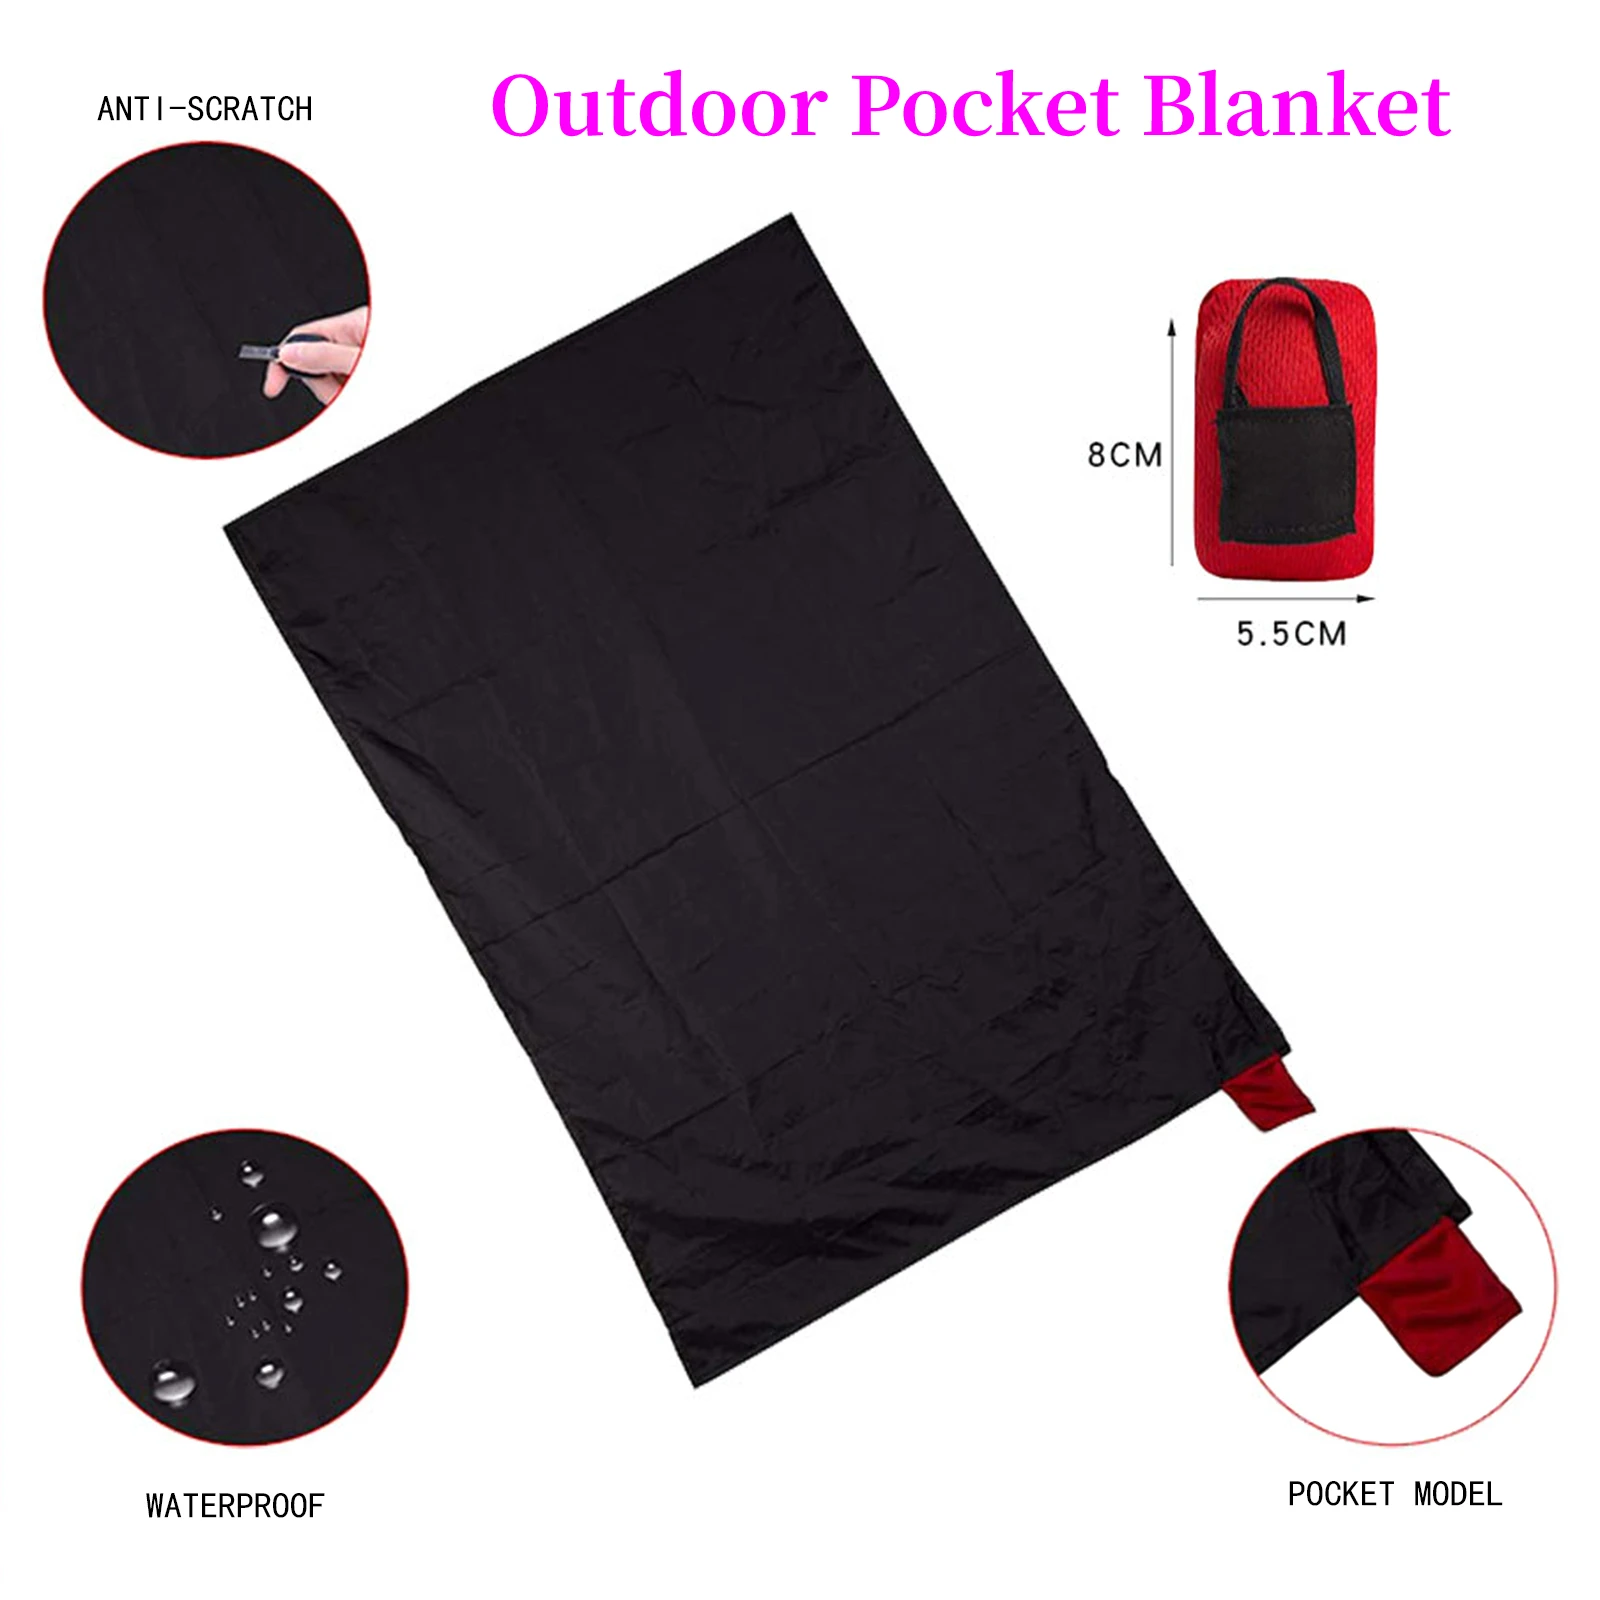 Cobertor de bolso ao ar livre-prova de areia & cobertor de piquenique impermeável, dobrável e esteira compacta, cobertor de piquenique leve portátil